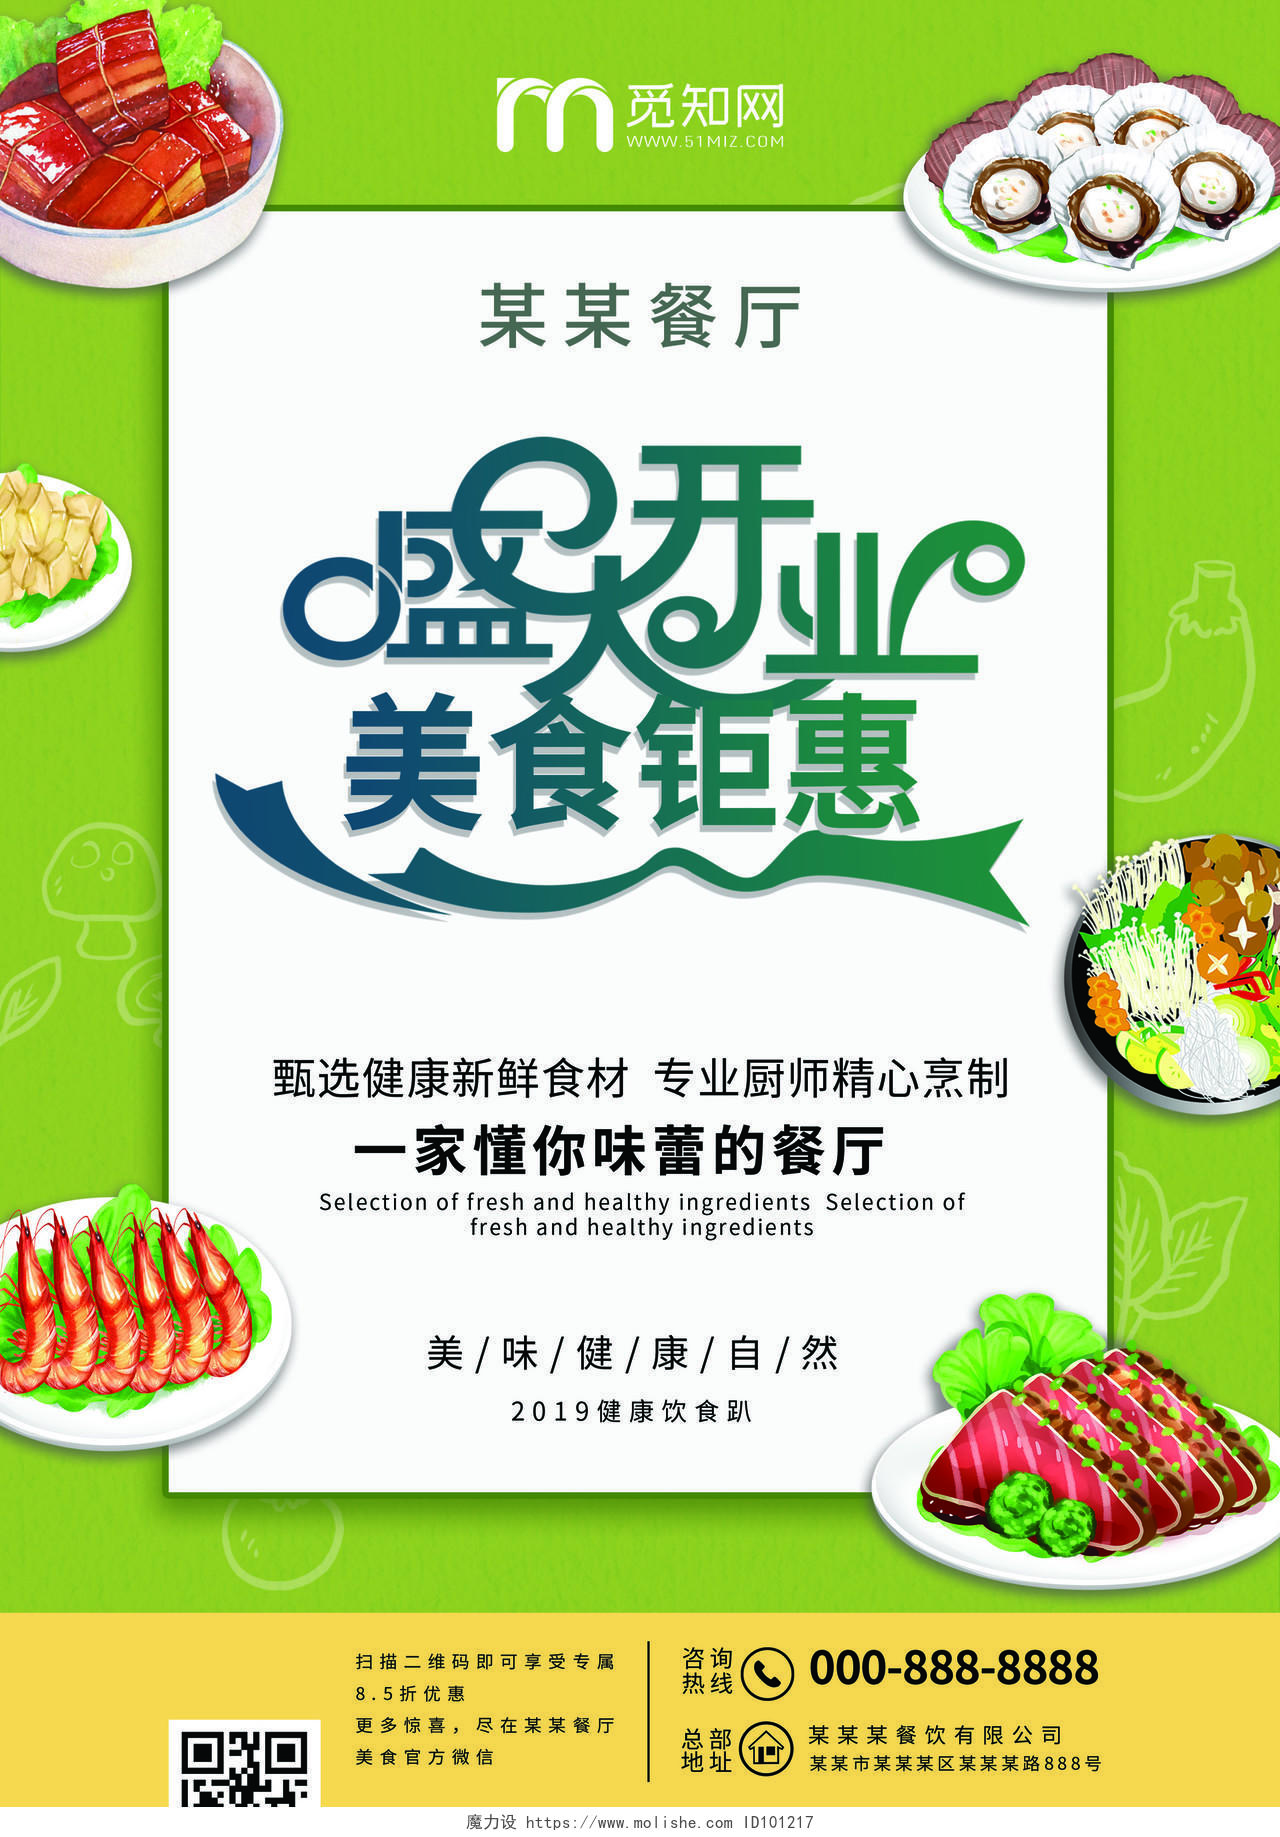 绿色清新盛大开业美食钜惠餐厅饭店餐饮开业宣传单